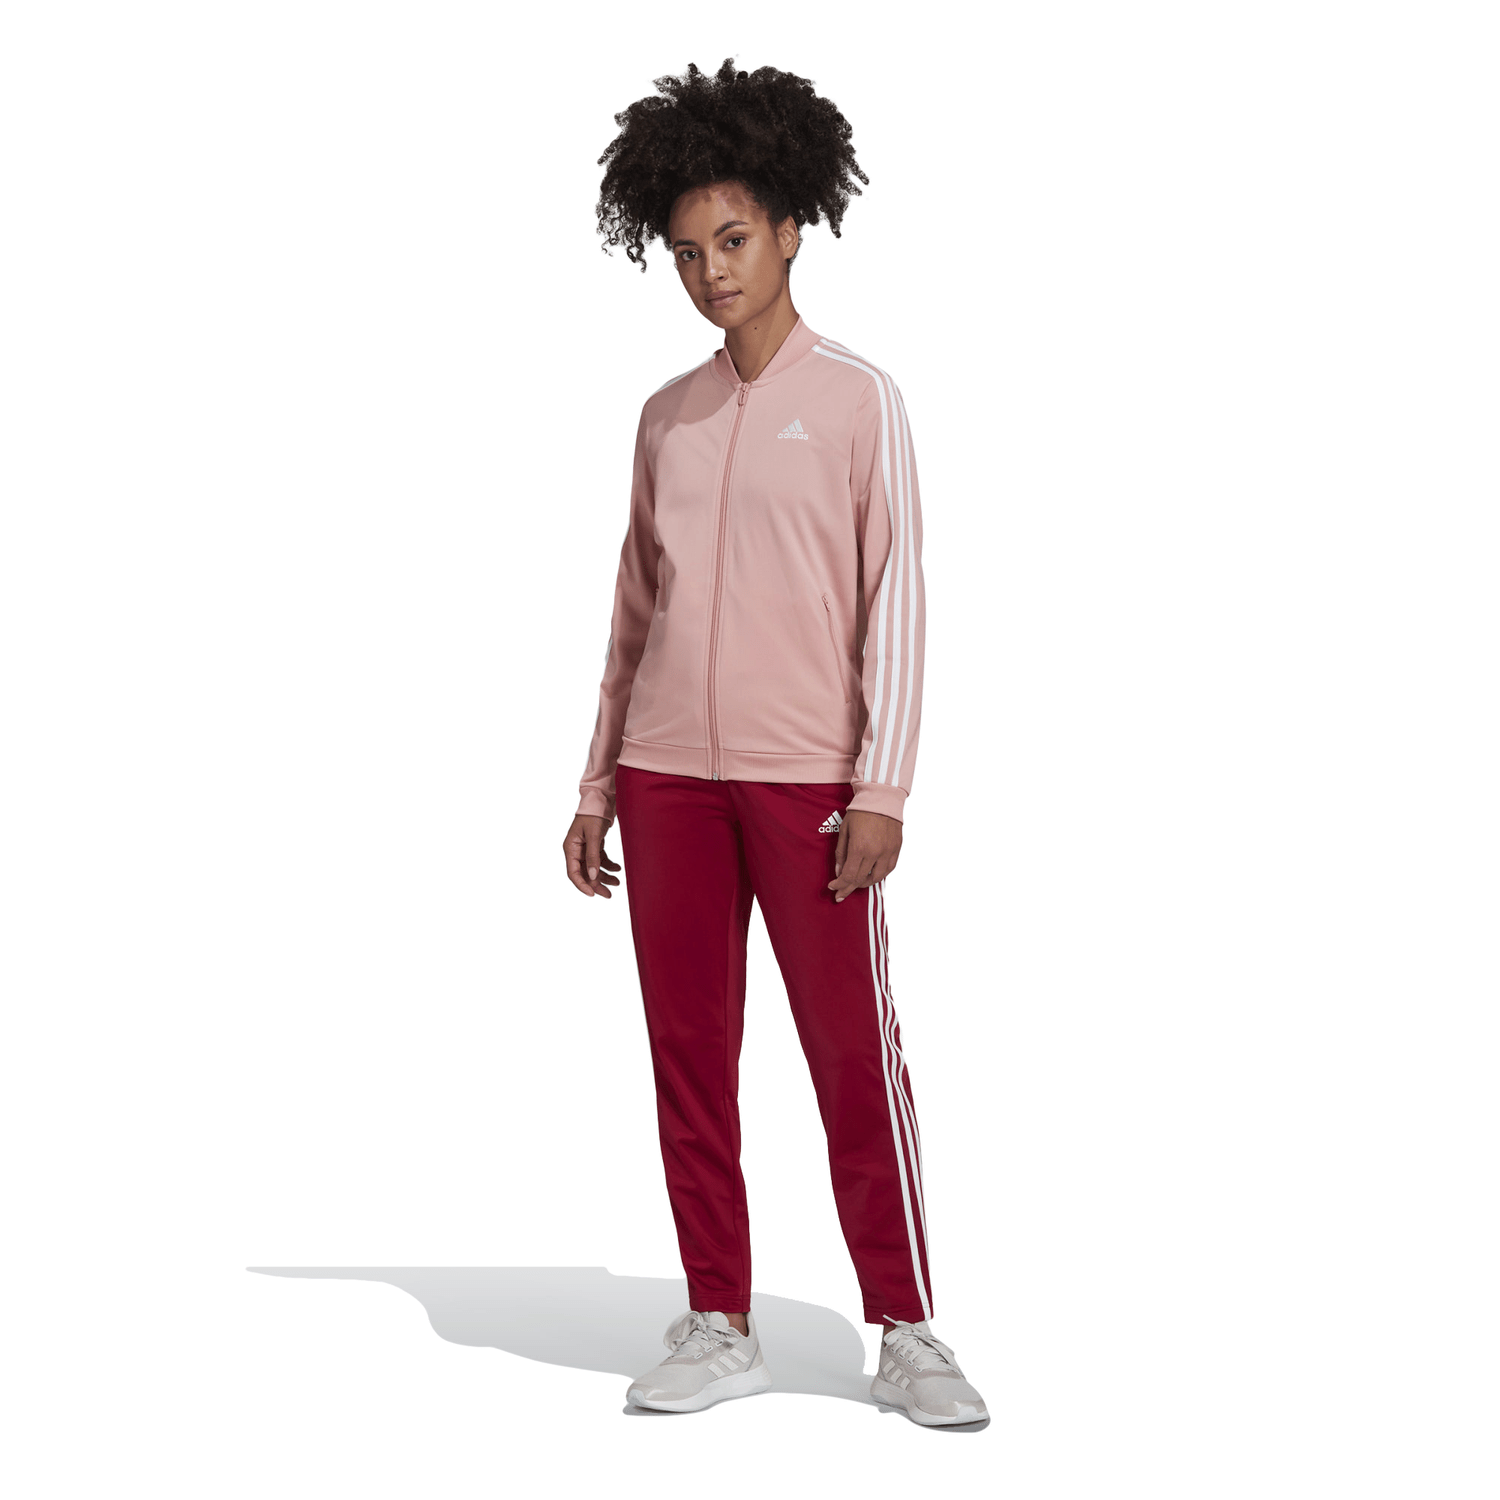 https://static.kapiva.com.br/public/kapiva/imagens/produtos/agasalho-adidas-essentials-3-stripes-rosa-vinho-4135.png